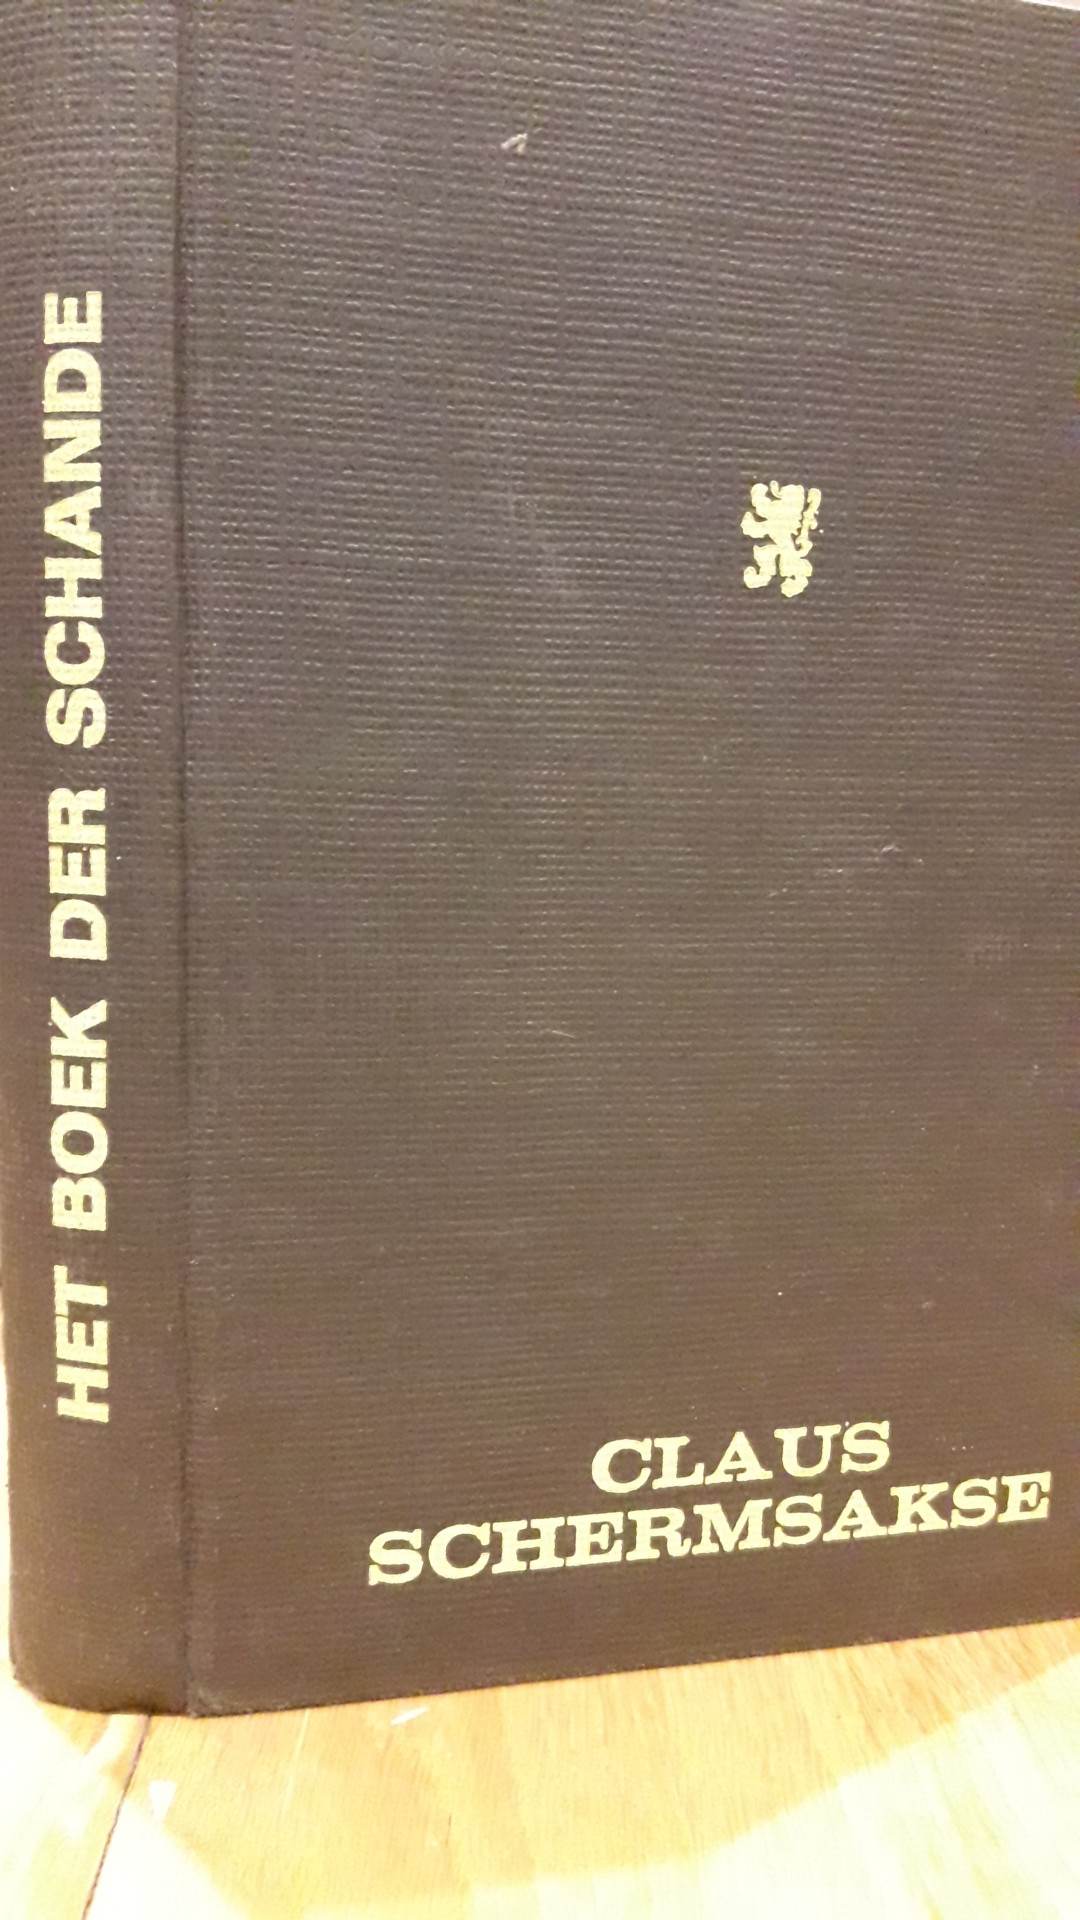 Het boek der schande door Claus Schermsakse , uitgave met harde kaft. / 190 blz